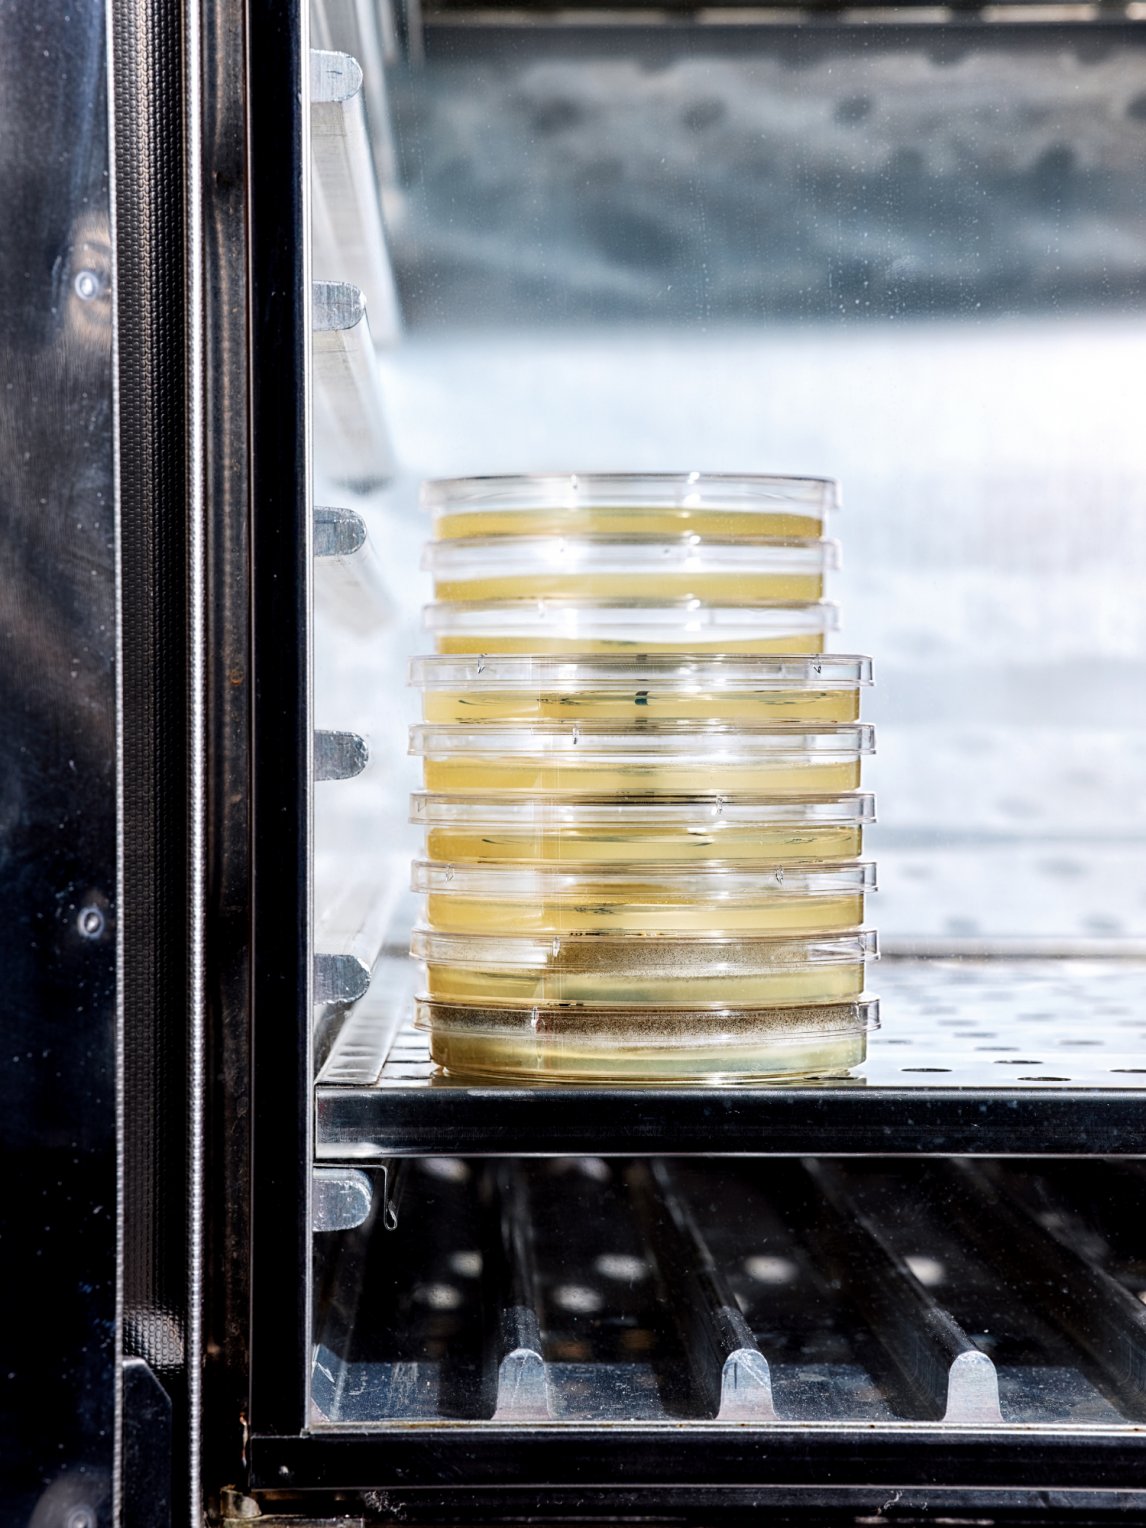 <p>LEBENDIMPFUNG<br />
Auf die Nährlösung der Petrischalen wurden Proben der verdünnten Produkte geträufelt – im Fachjargon: „geimpft“. Nach einigen Tagen zeigt sich, ob und in welchem Maße die Lebensmittel keimbelastet sind</p>
